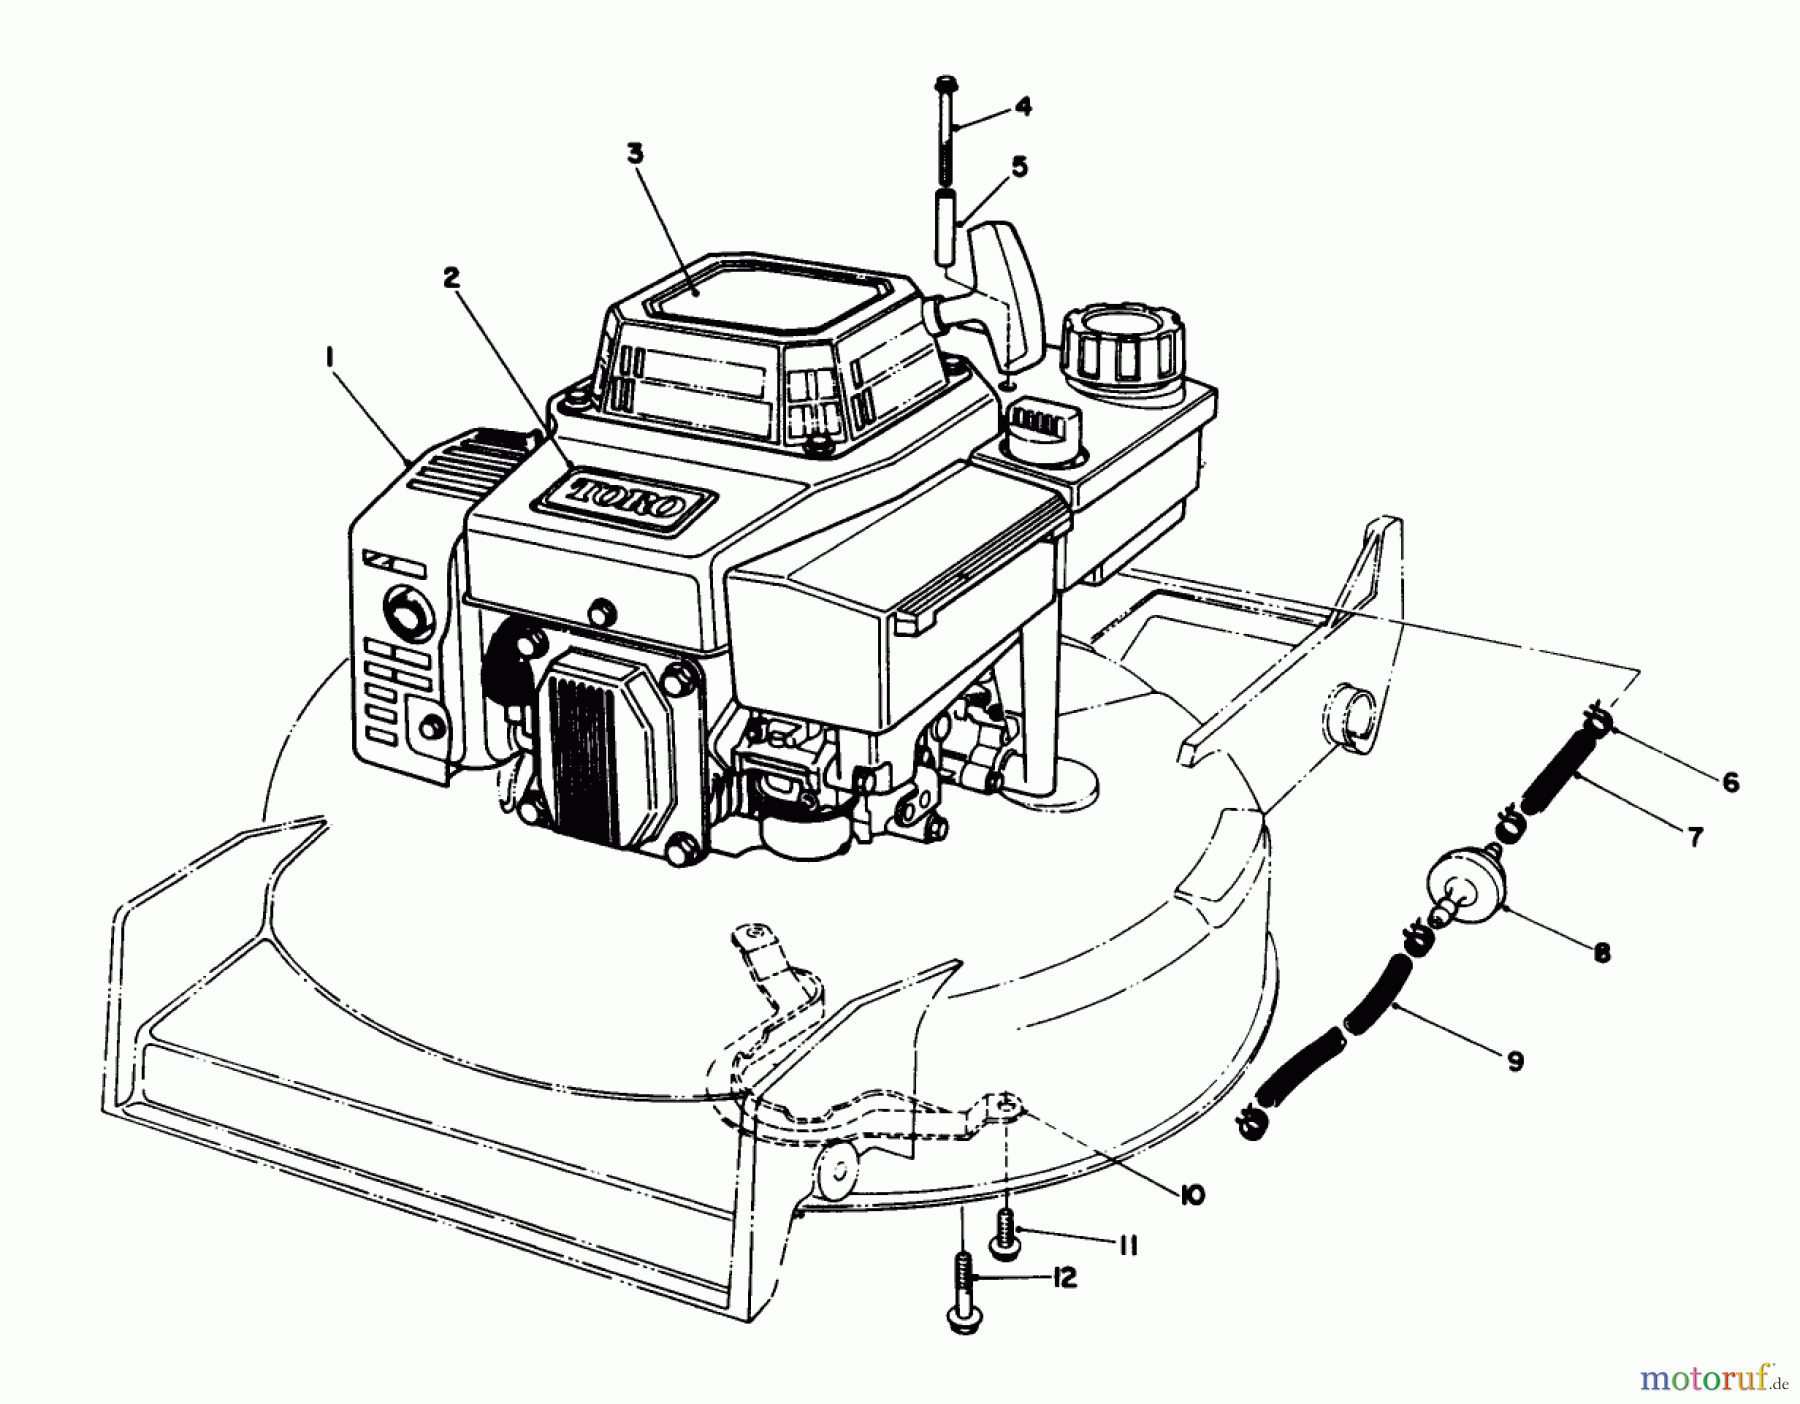  Toro Neu Mowers, Walk-Behind Seite 1 20622 - Toro Lawnmower, 1990 (0000001-0003101) ENGINE ASSEMBLY